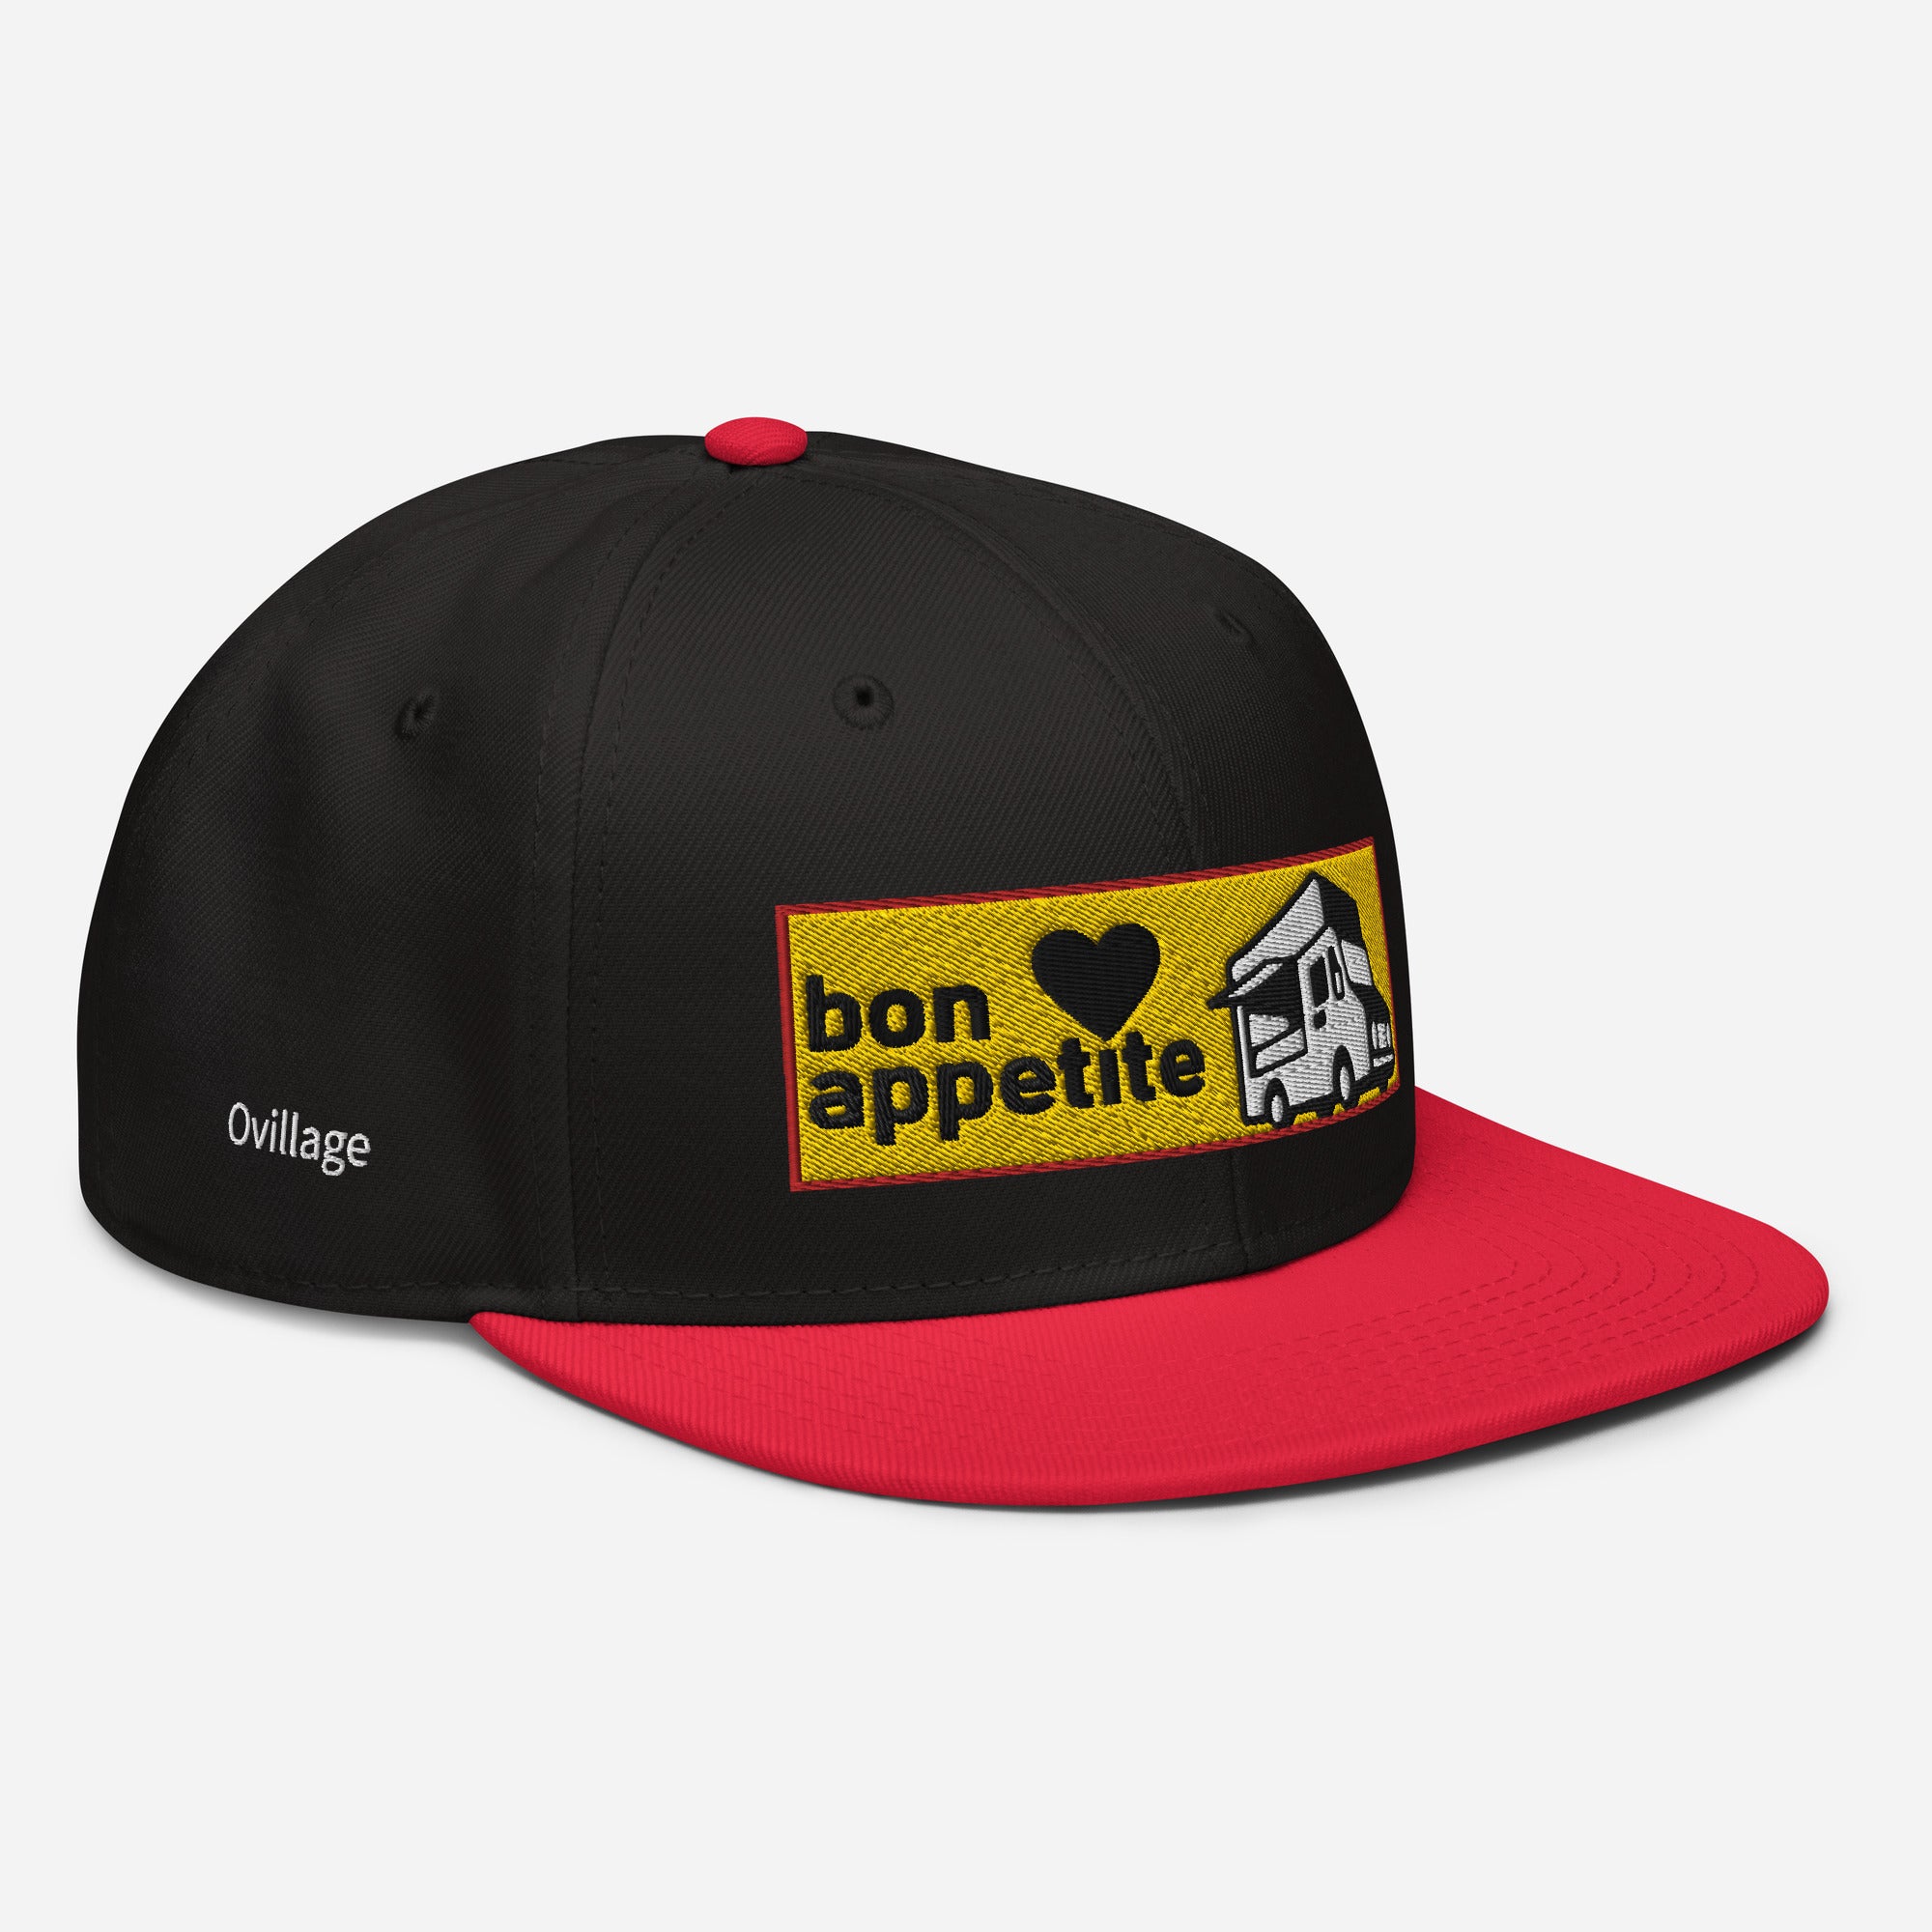 Snapback Cap [Bon appetit2] Red / Black / Black